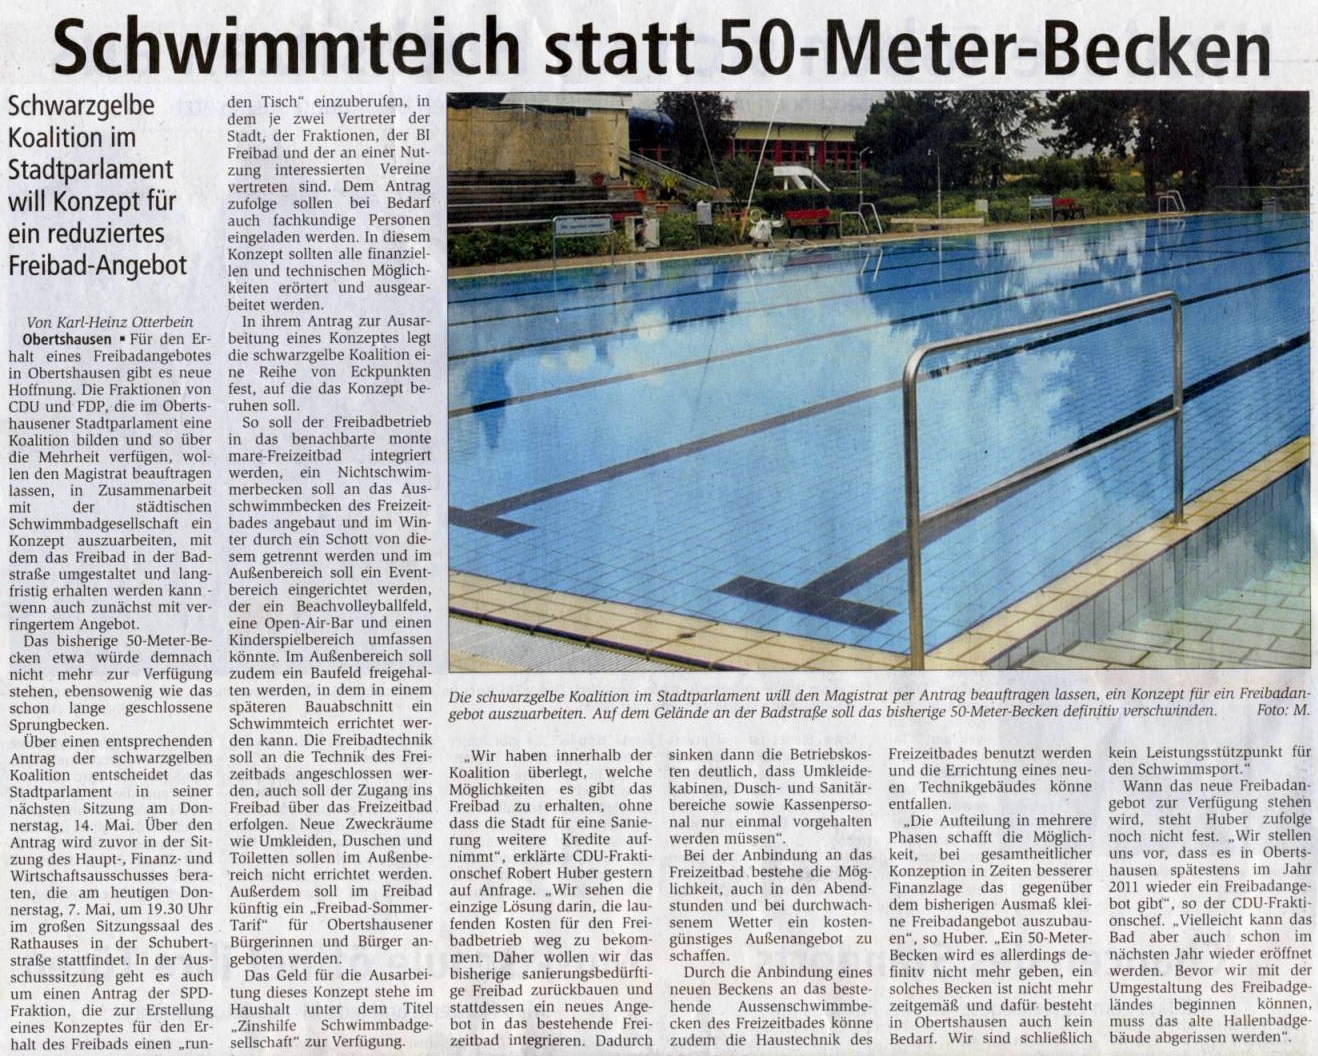 Bericht in der Offenbach Post vom 7. Mai 2009